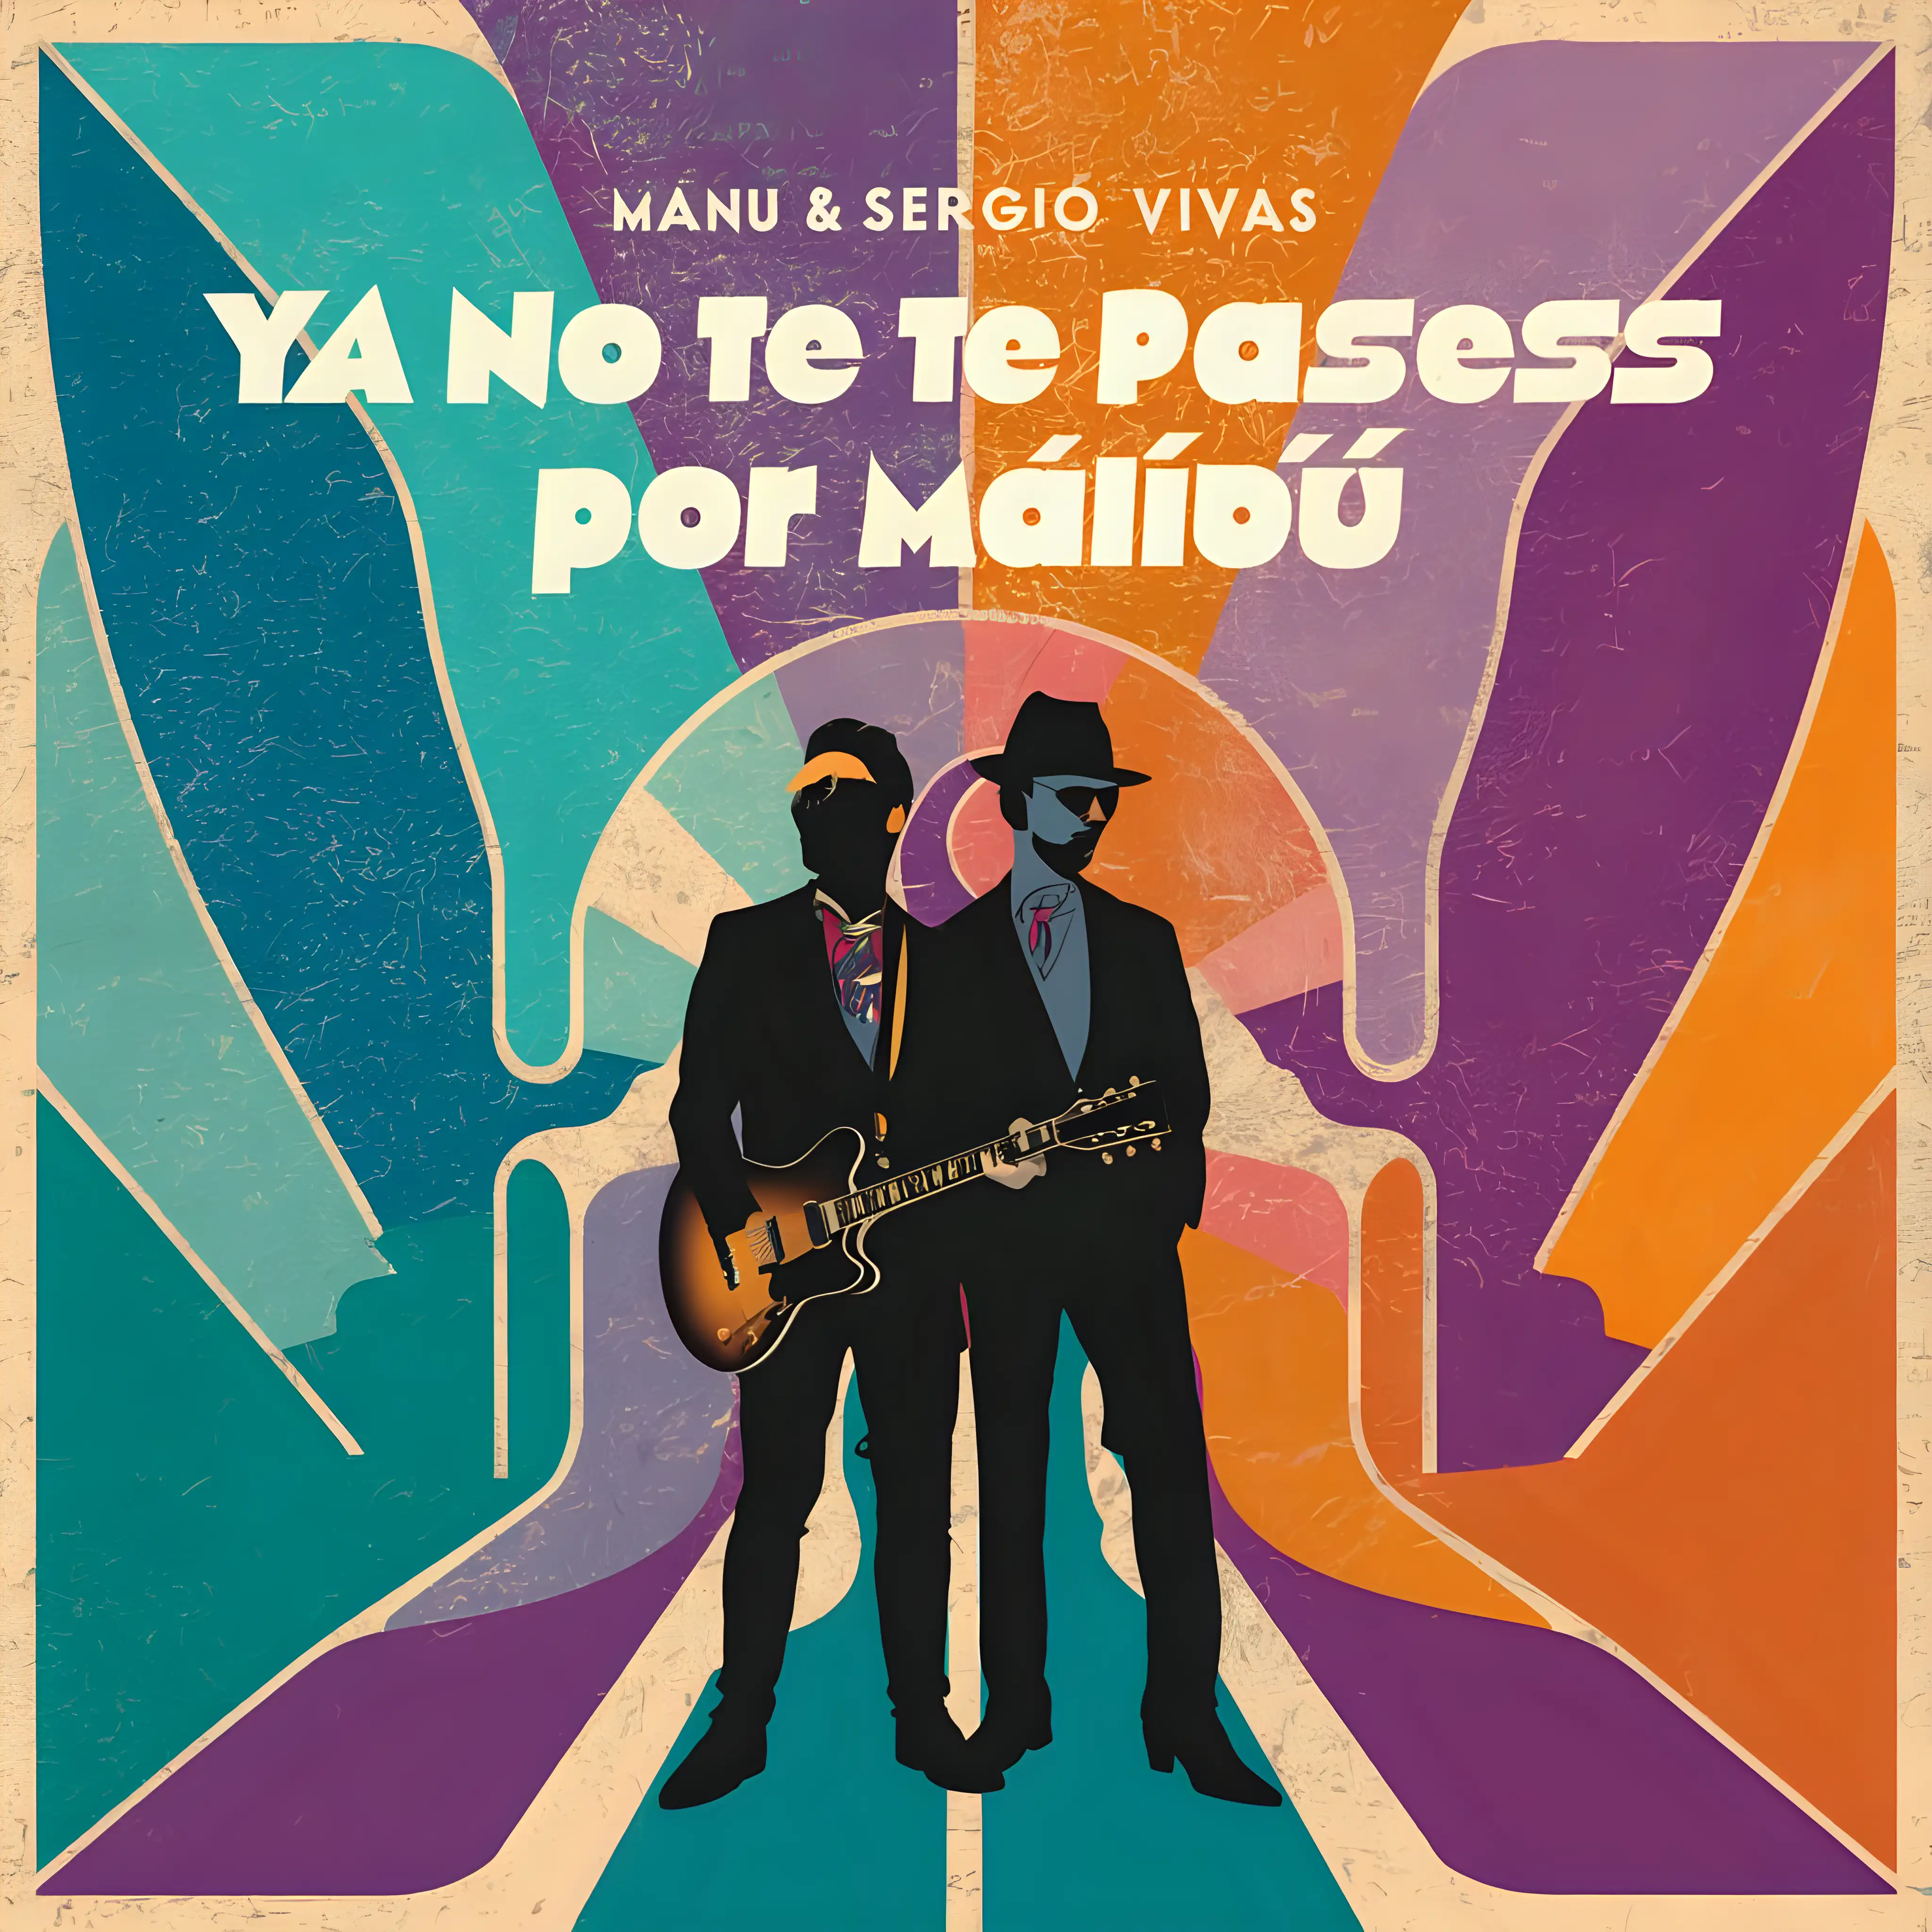 Genera una portada de un single con título 'Ya no te pases por Malibú' con un estilo ecléctico. El grupo se llamar 'Manu & Sergio''VIVAS'
